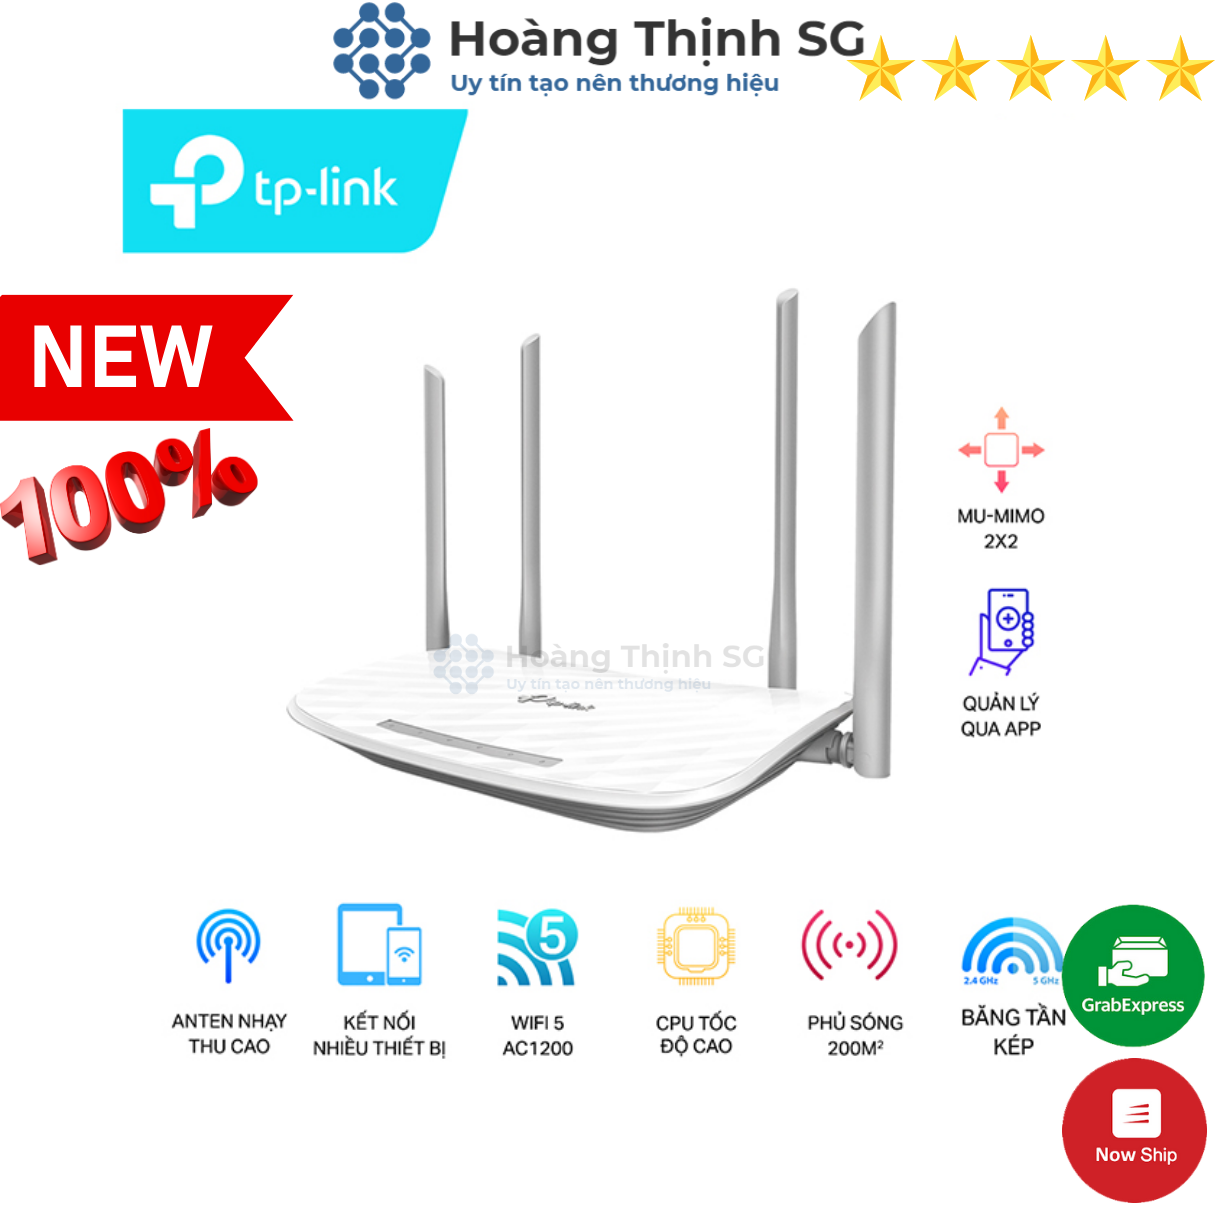 Bộ Phát Wifi TP-Link Archer C50 Chuẩn AC 1200Mbps - Chính hãng TP-Link - Bảo hành 24 tháng